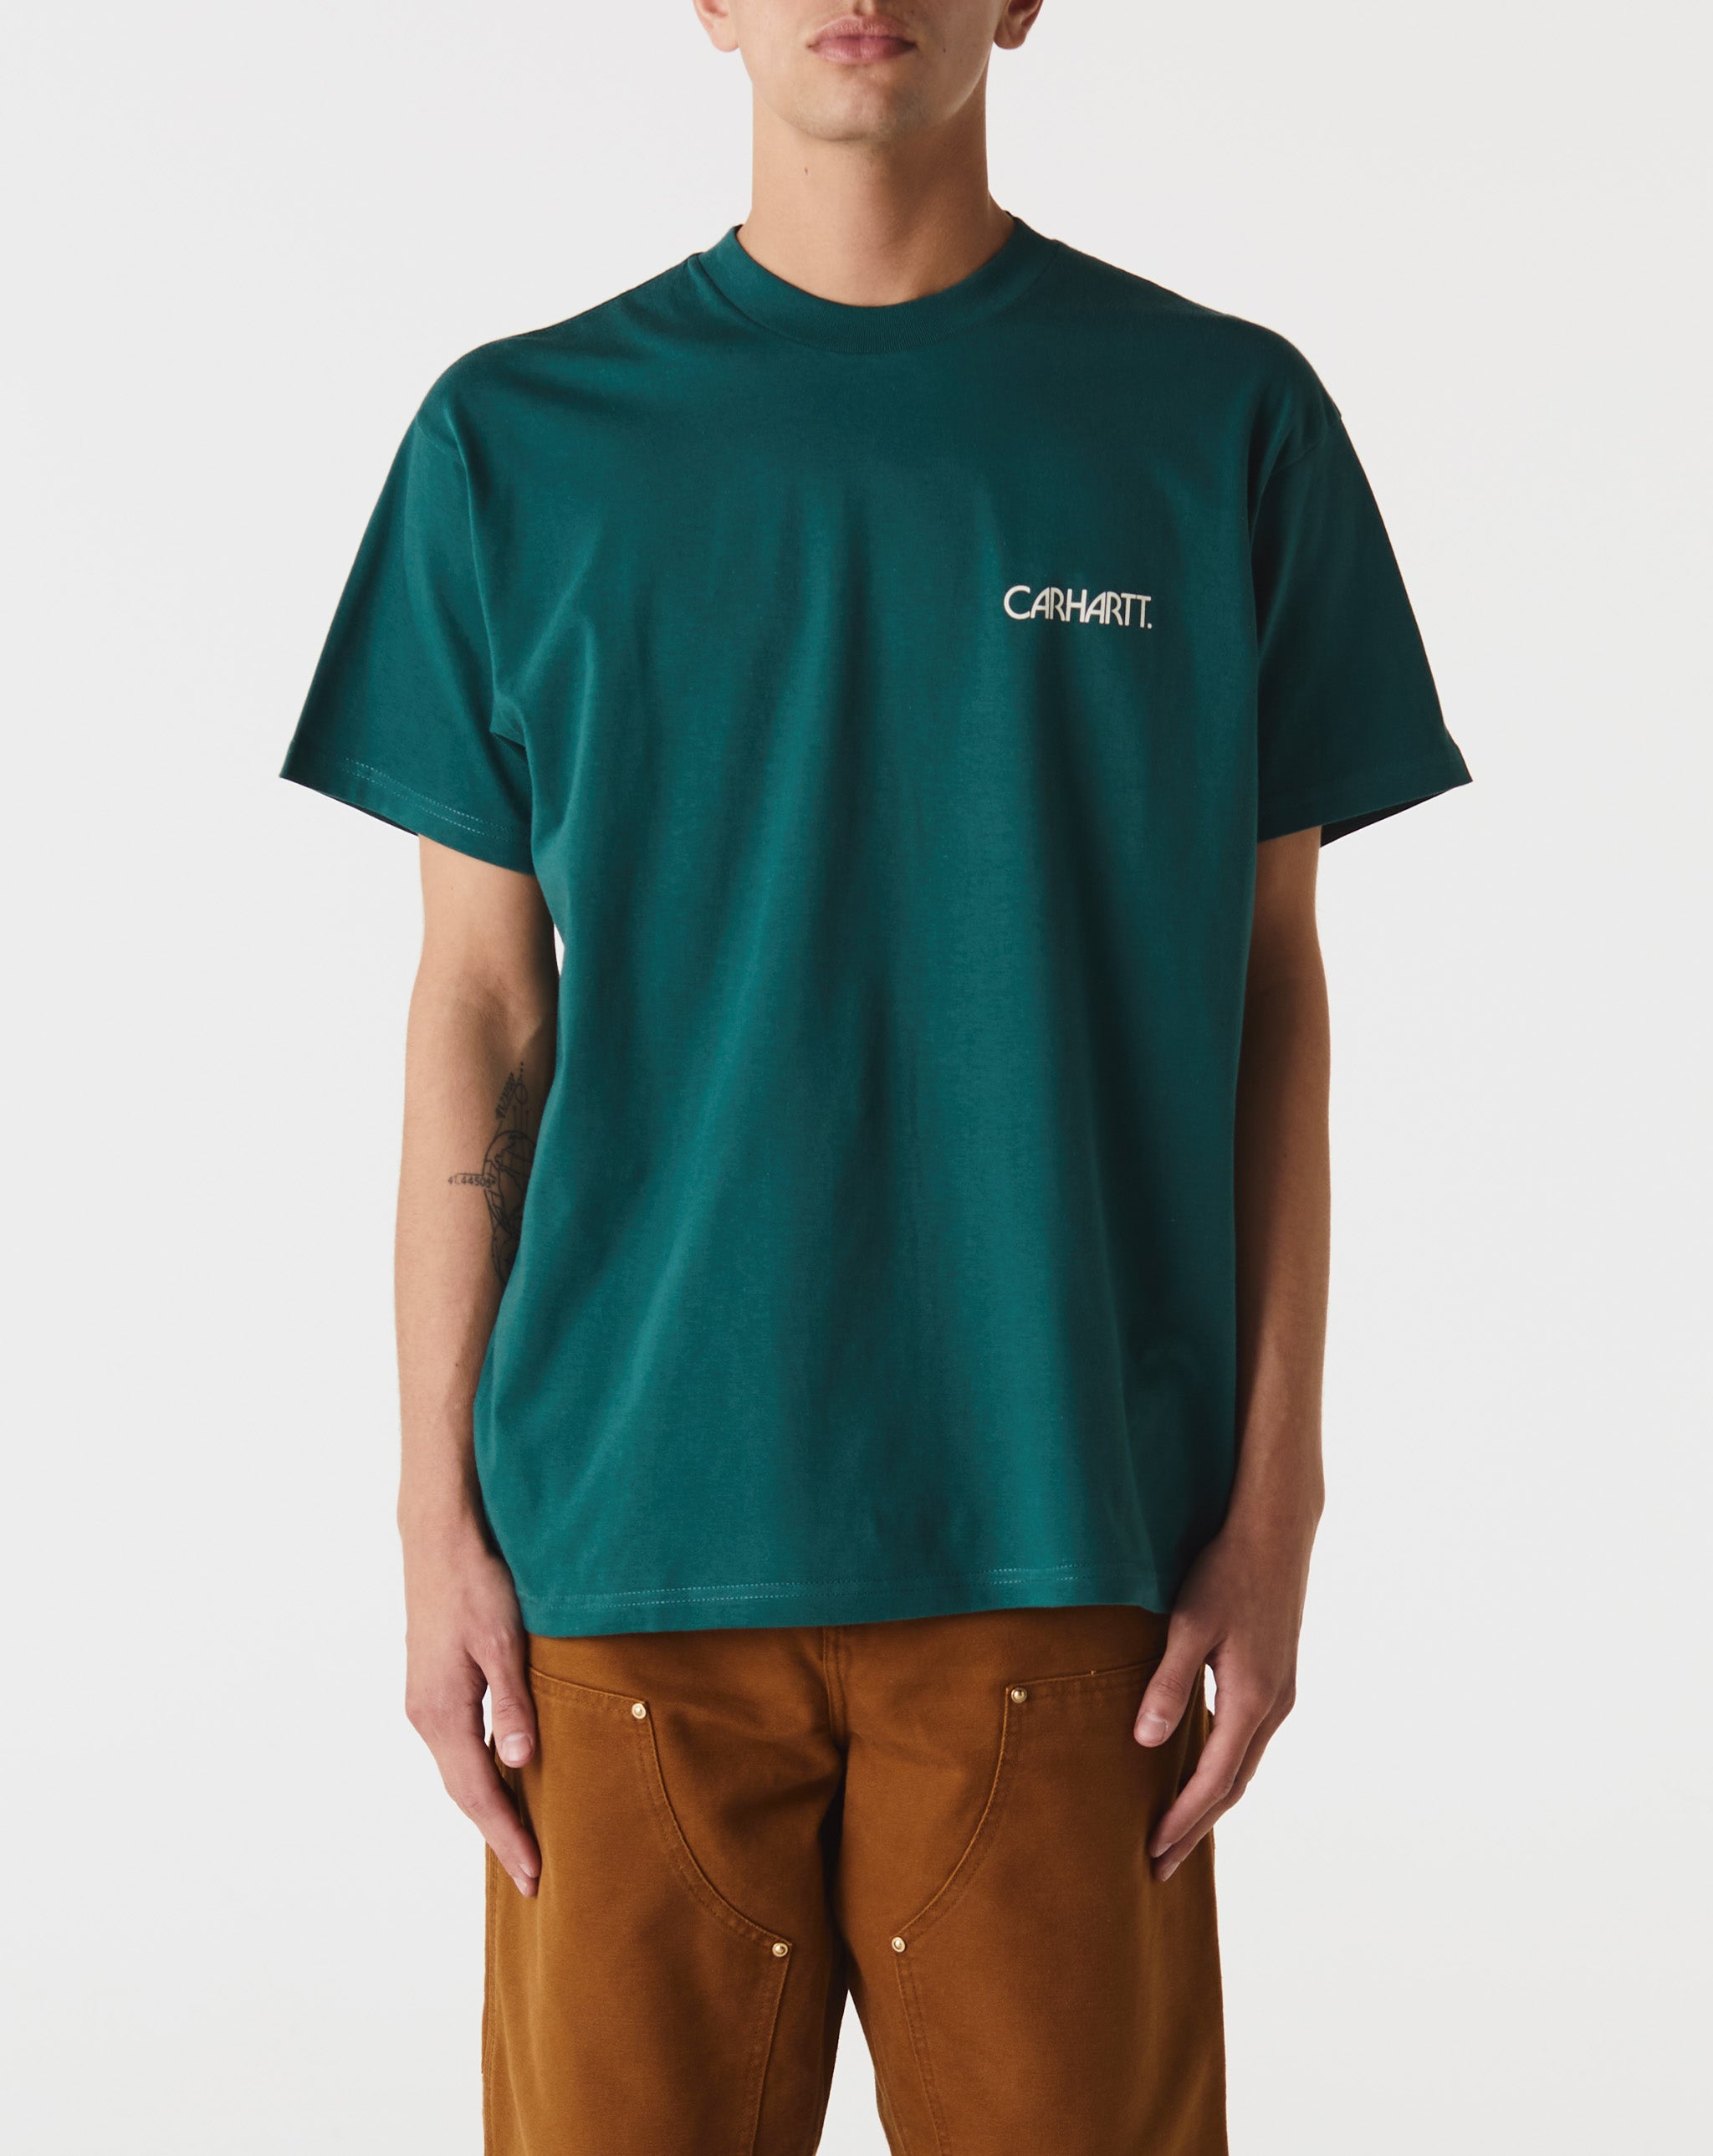 Carhartt WIP Soil T-Shirt  - Cheap Urlfreeze Jordan outlet